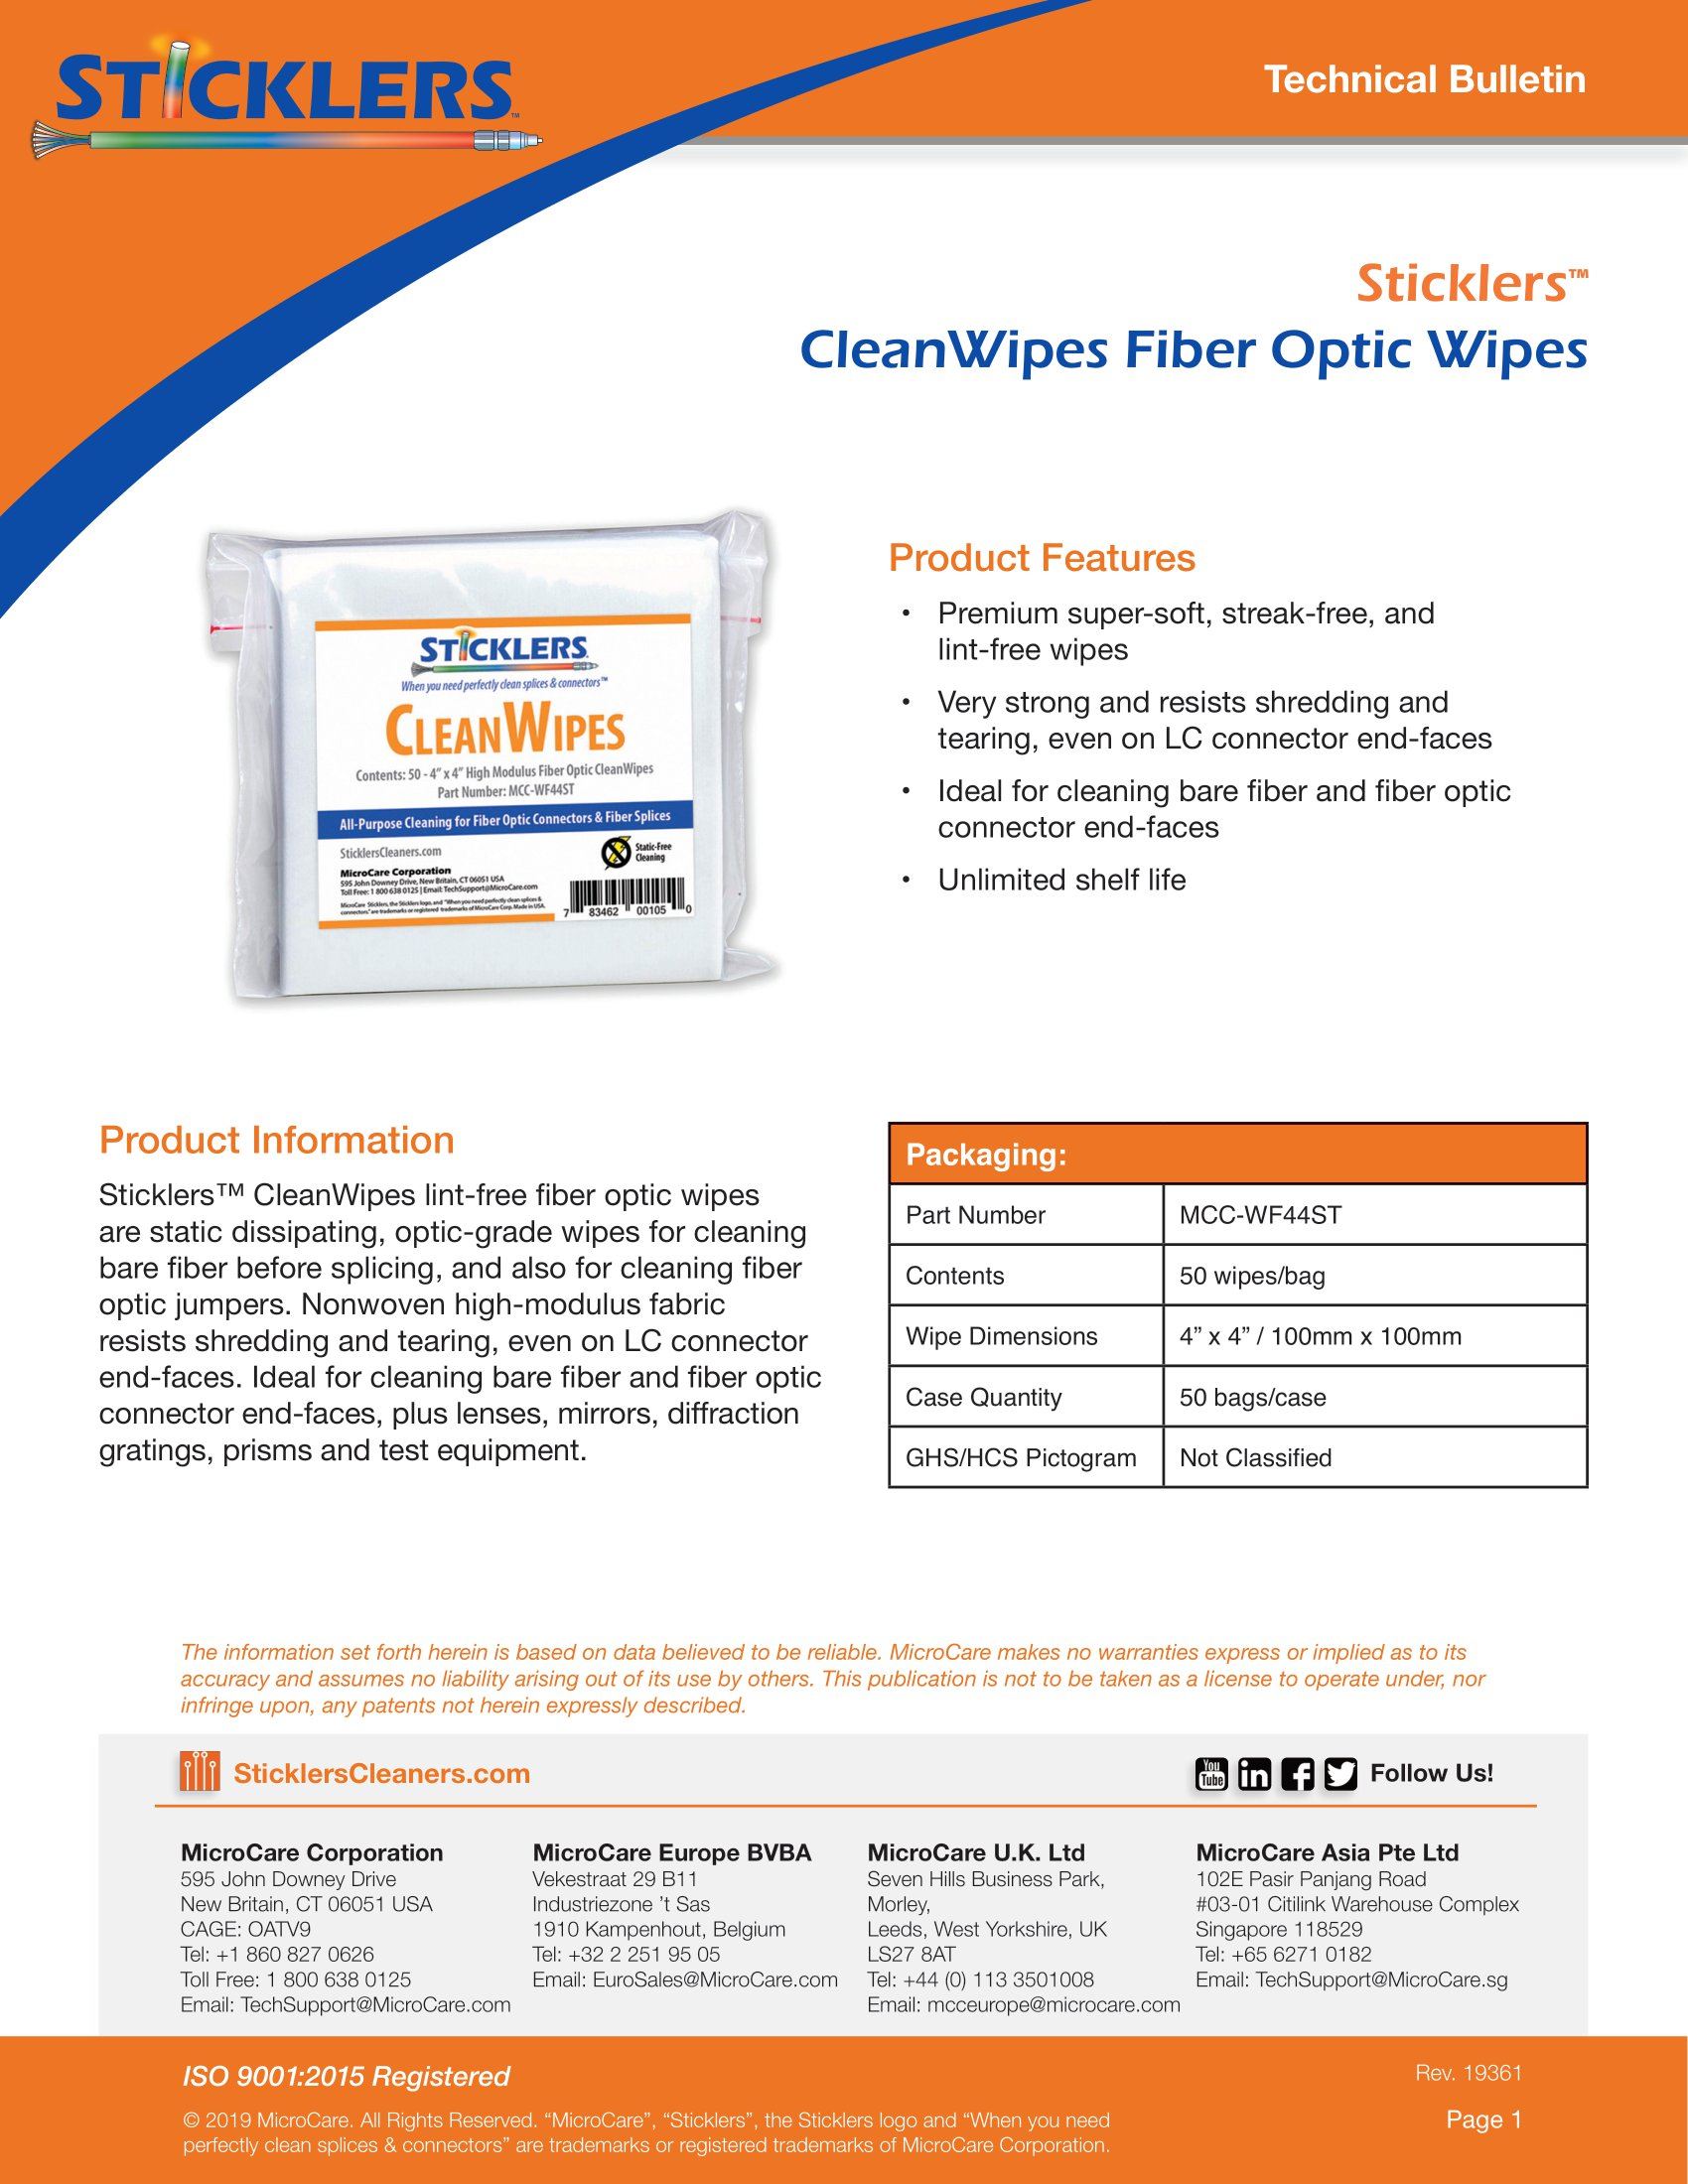 MCC-WF44 Flat CleanWipes (NSN 6850-01-5929440)